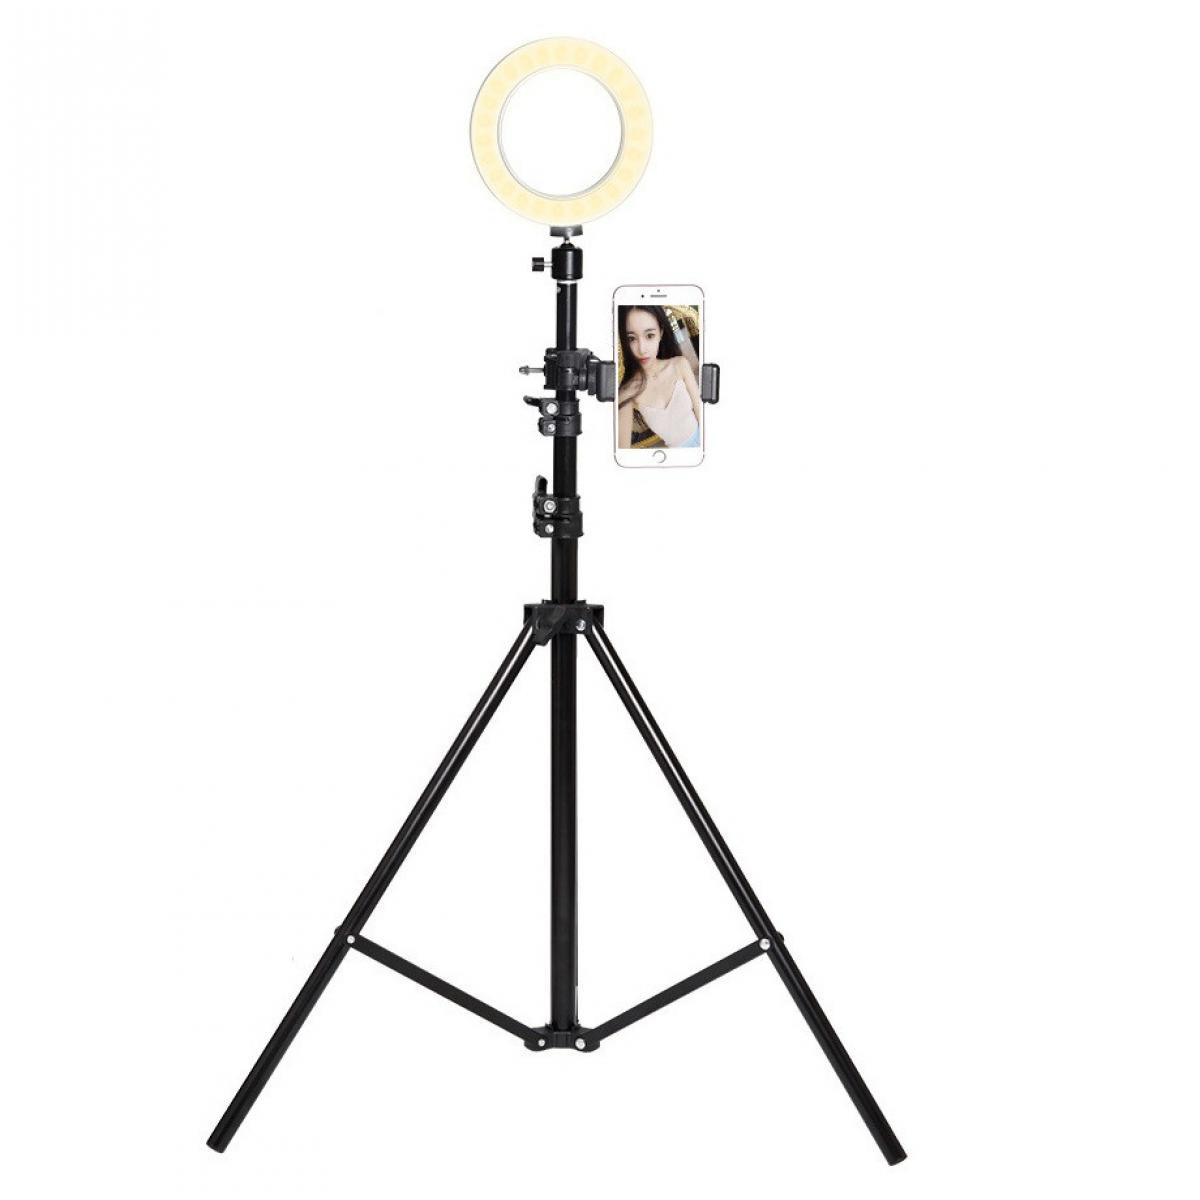 Shot - Trepied Telescopique avec Flash pour ALCATEL 1B Smartphone Reglable Photo (NOIR) - Autres accessoires smartphone